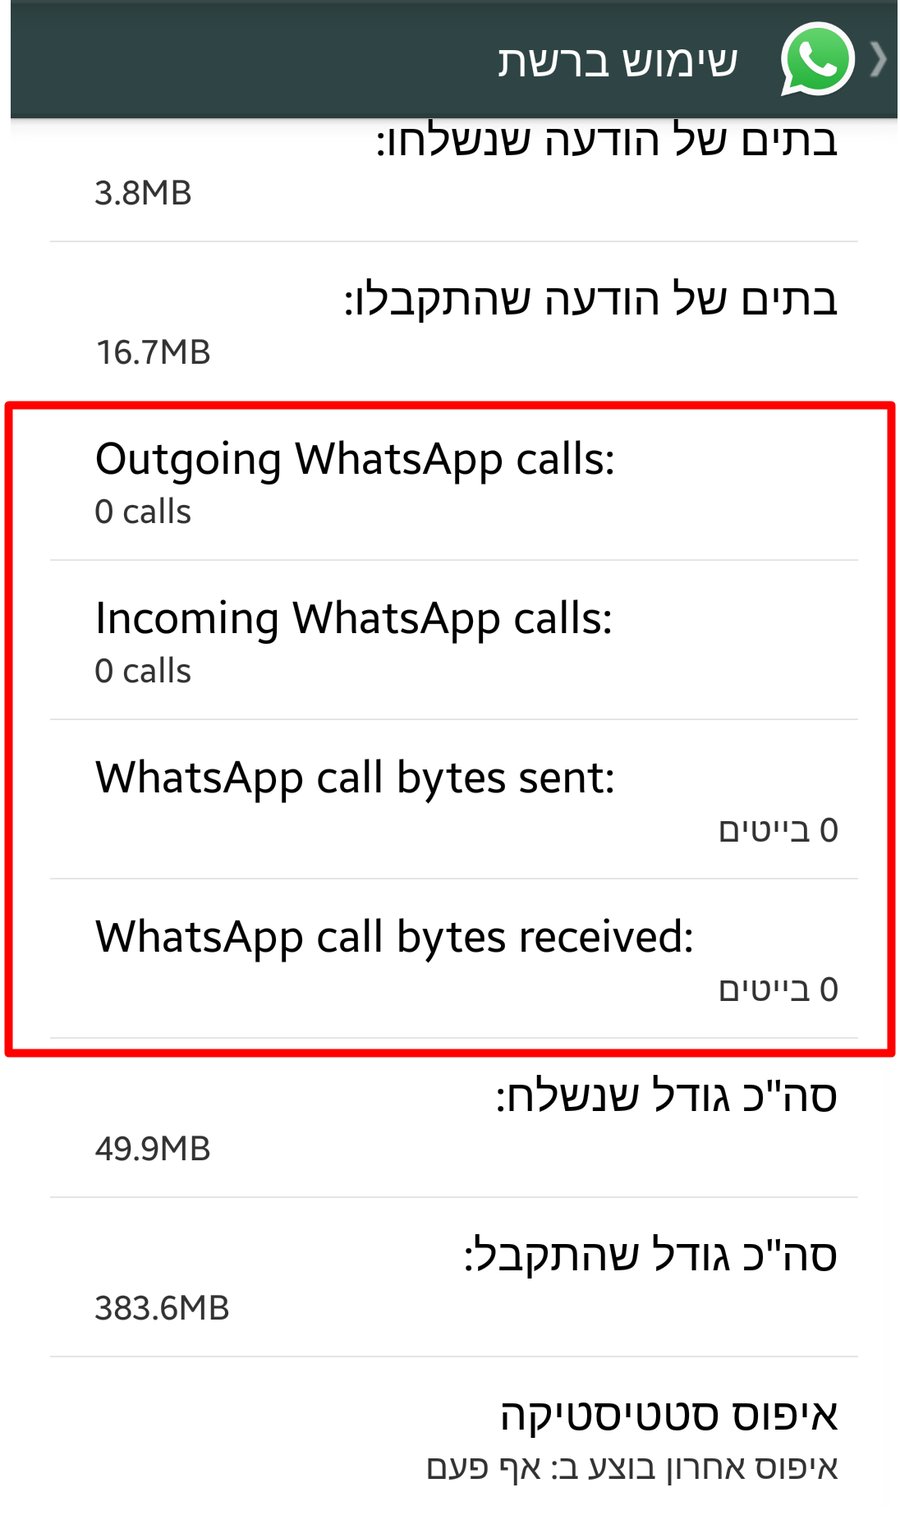 WhatsApp מציגה לראשונה אזכור מפורש לשיחות קוליות